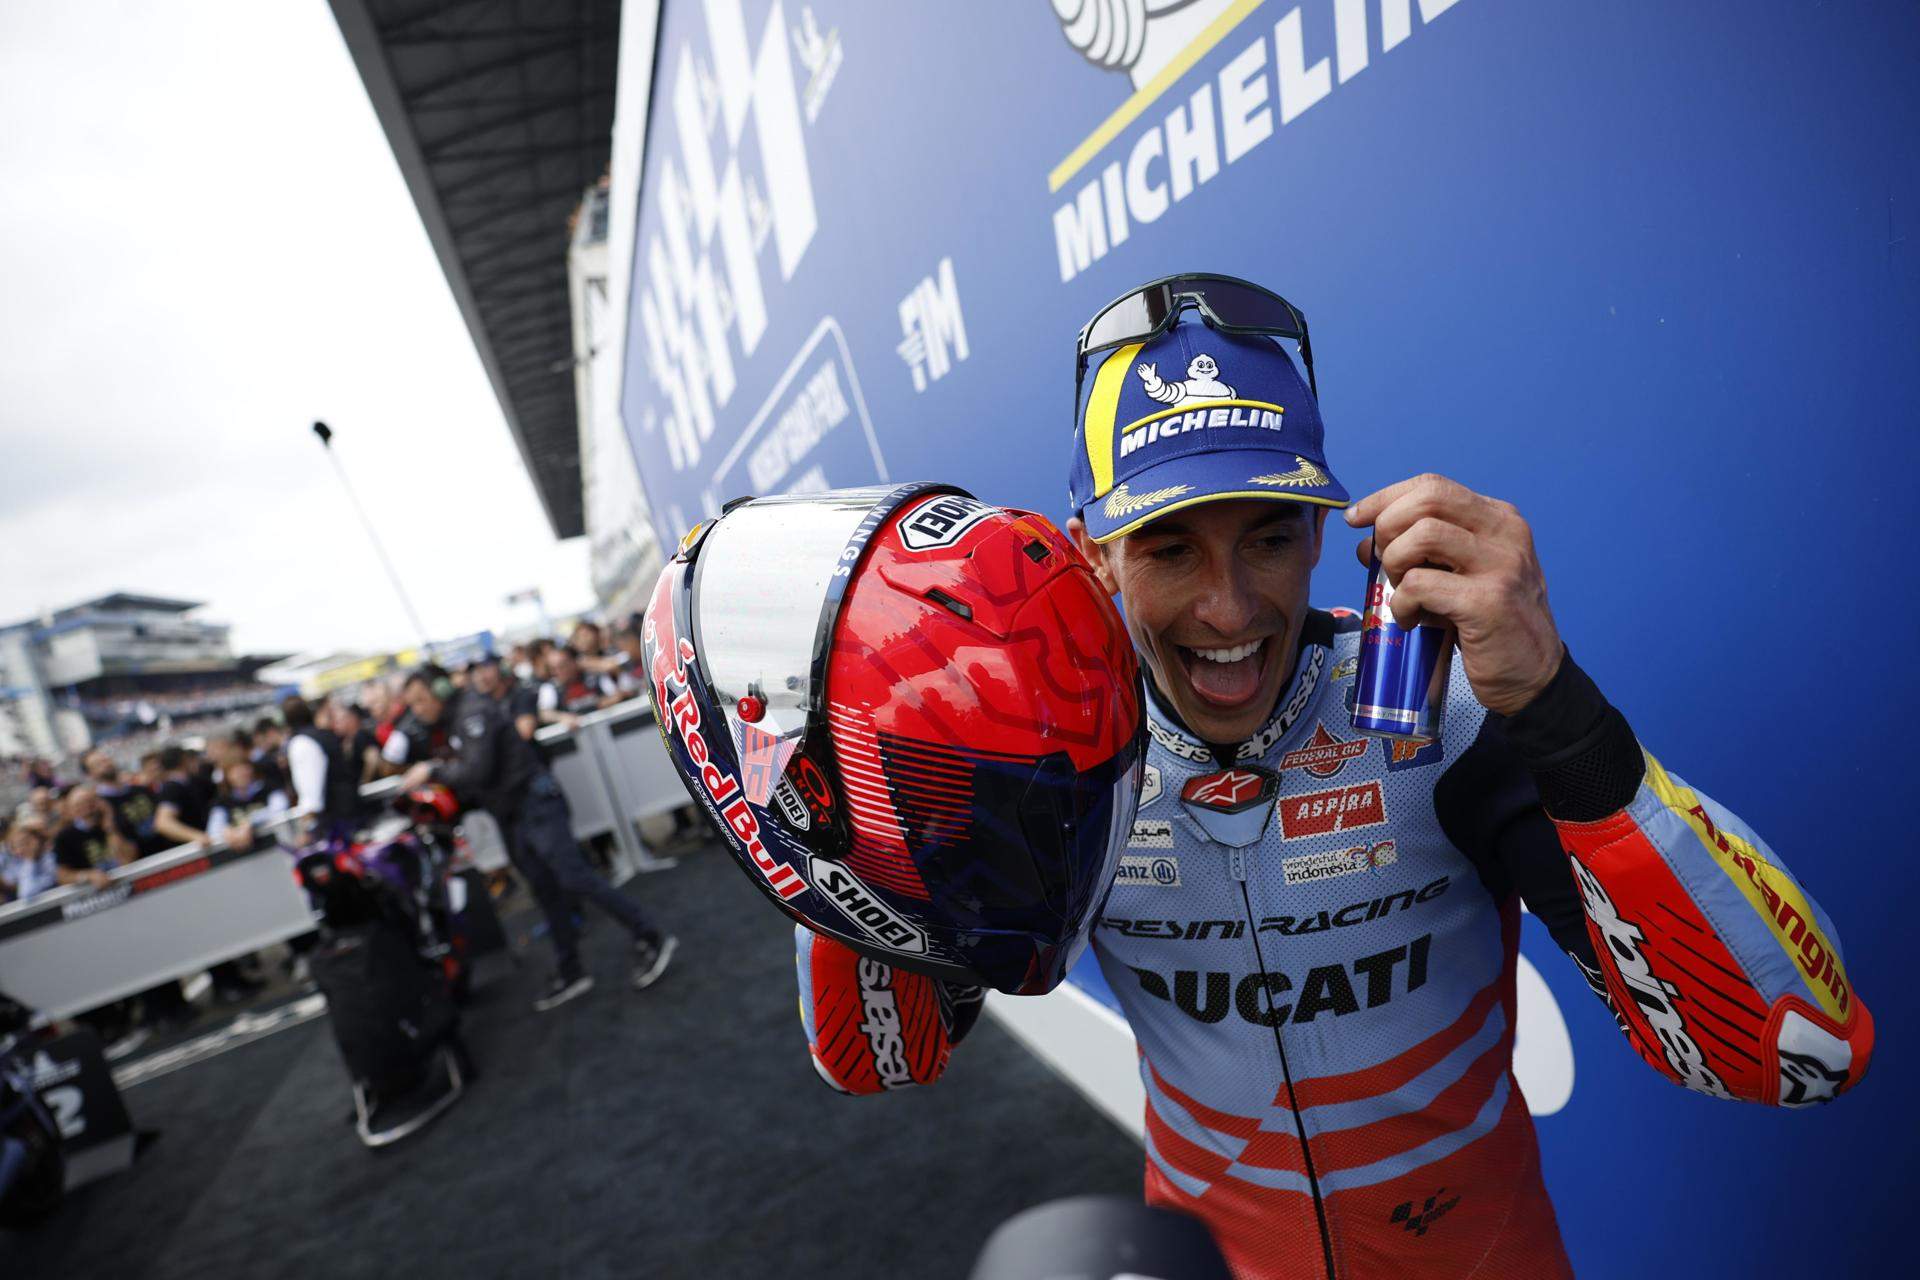 Marc Márquez, contracte milionari, moto oficial i pilot número 1 si traeix Ducati